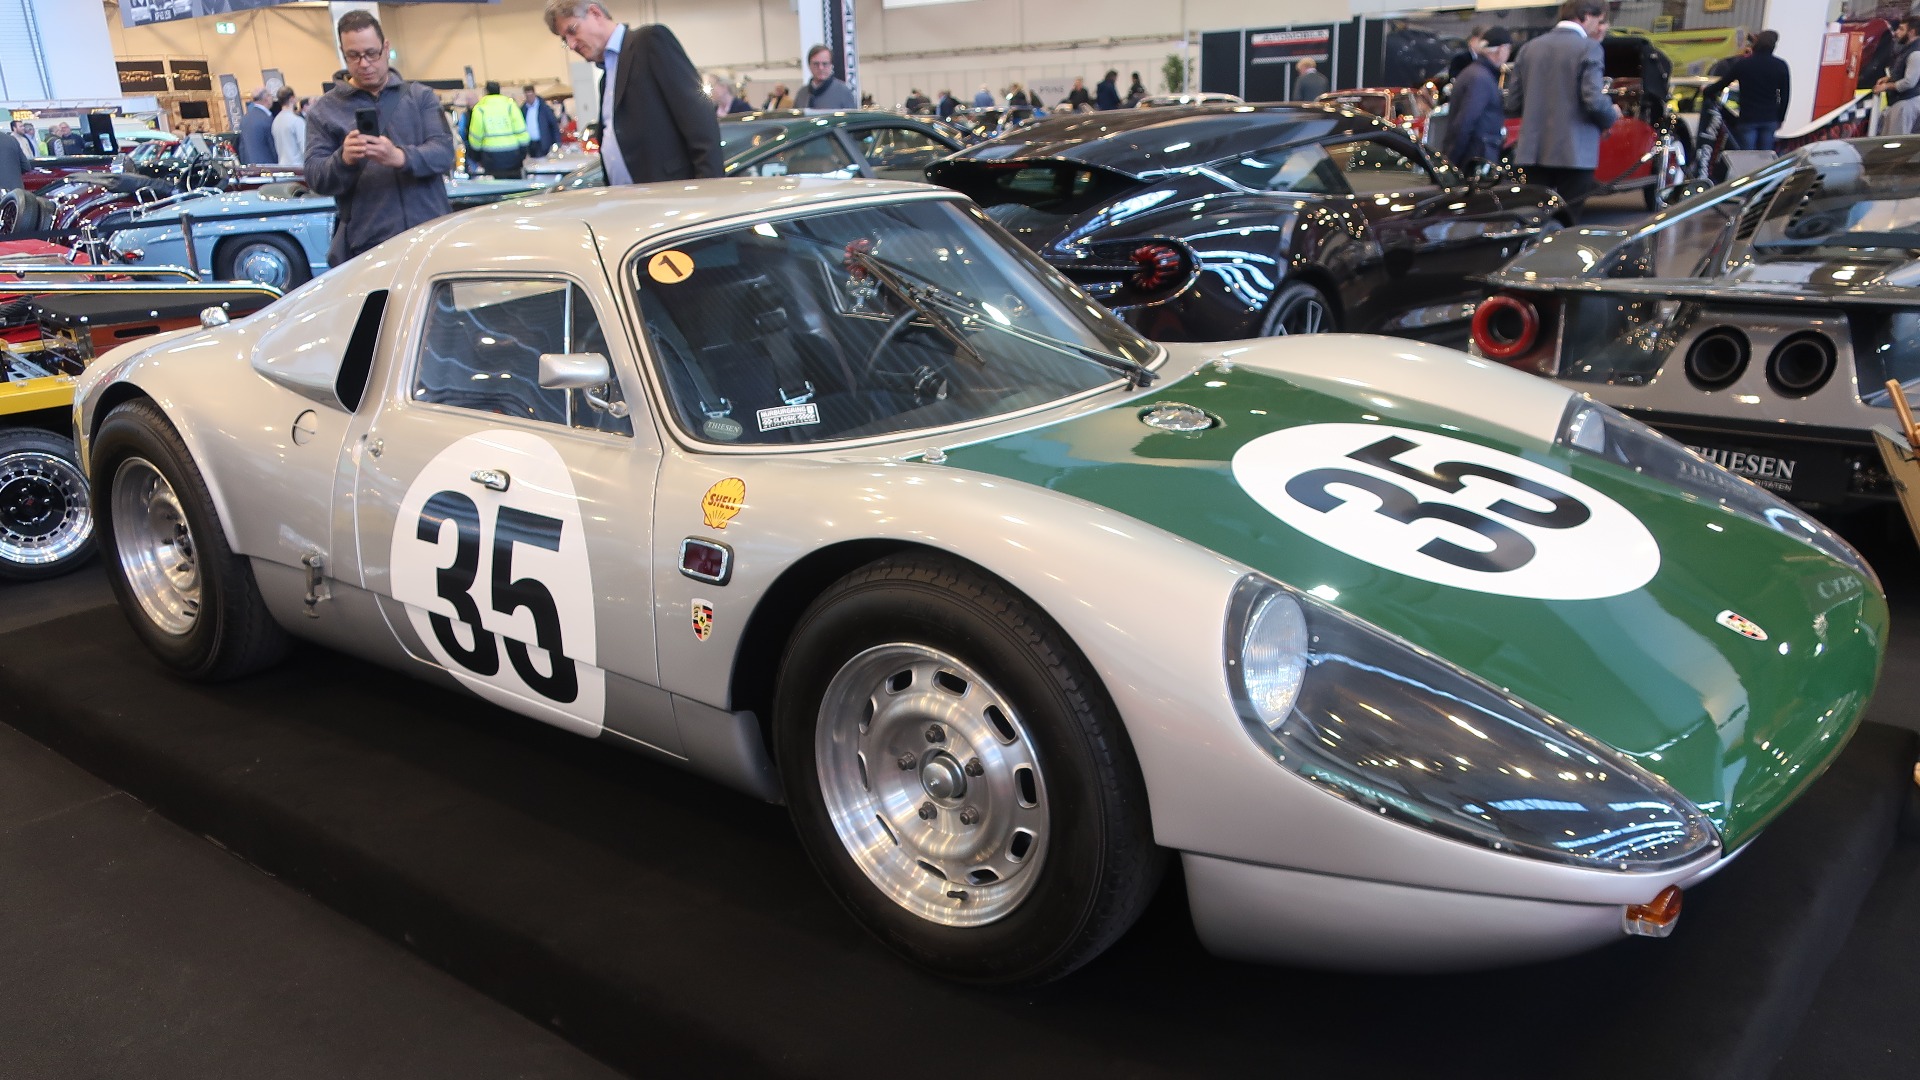 Her snakker vi! En av fem originale fabrikksbygde Porsche 904-6, med løpshistorikk fra Le Mans som del av Porsches fabrikksteam der.